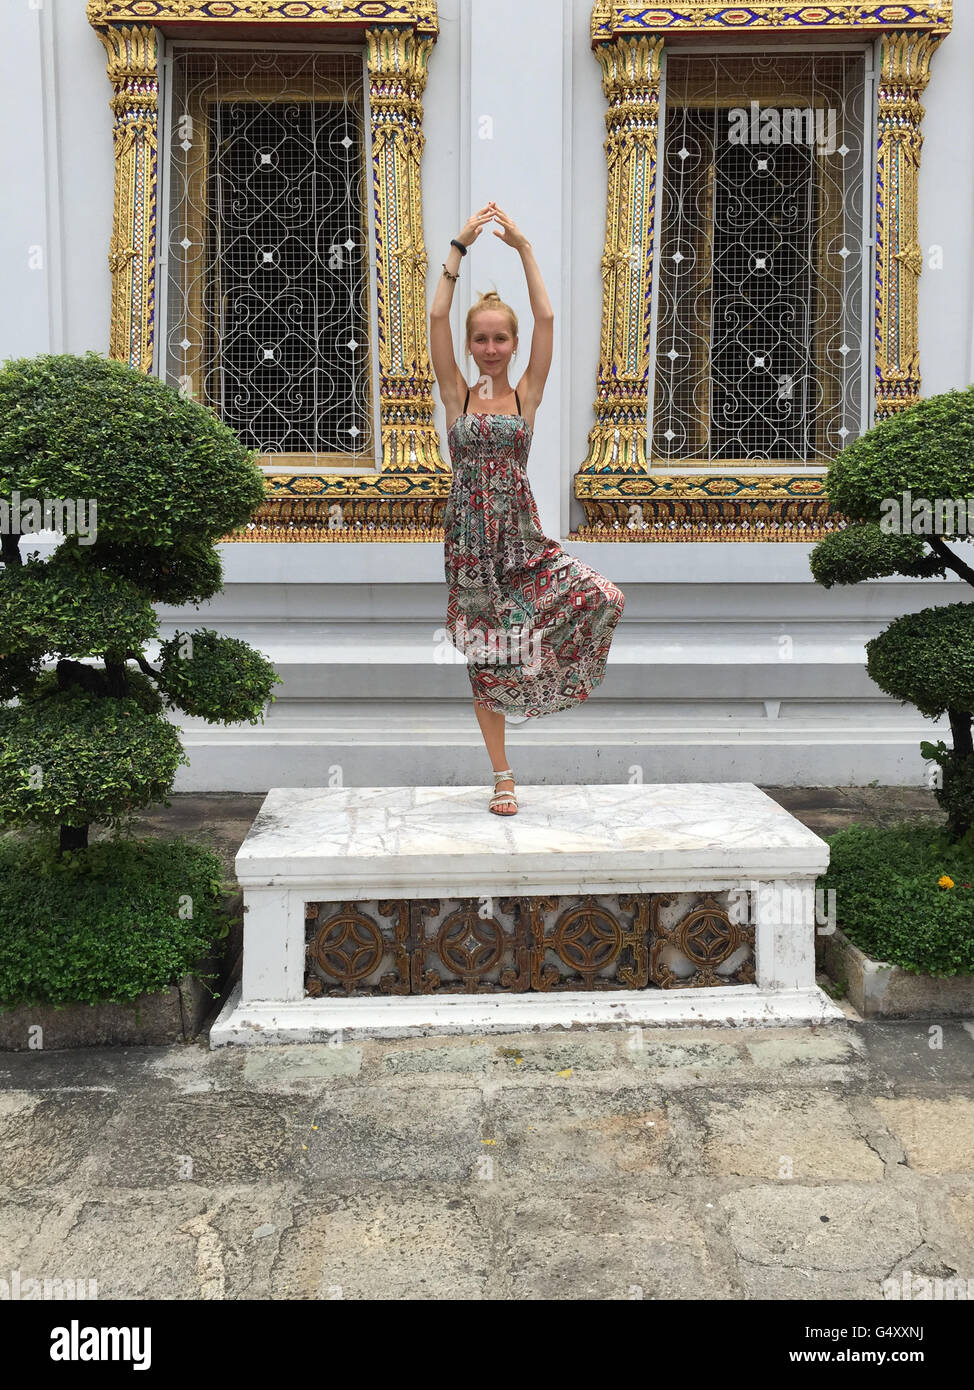 Thaïlande, Bangkok, centralthailand, yoga dans le temple bouddhiste Wat Pho royal dans le centre de la vieille ville historique Banque D'Images